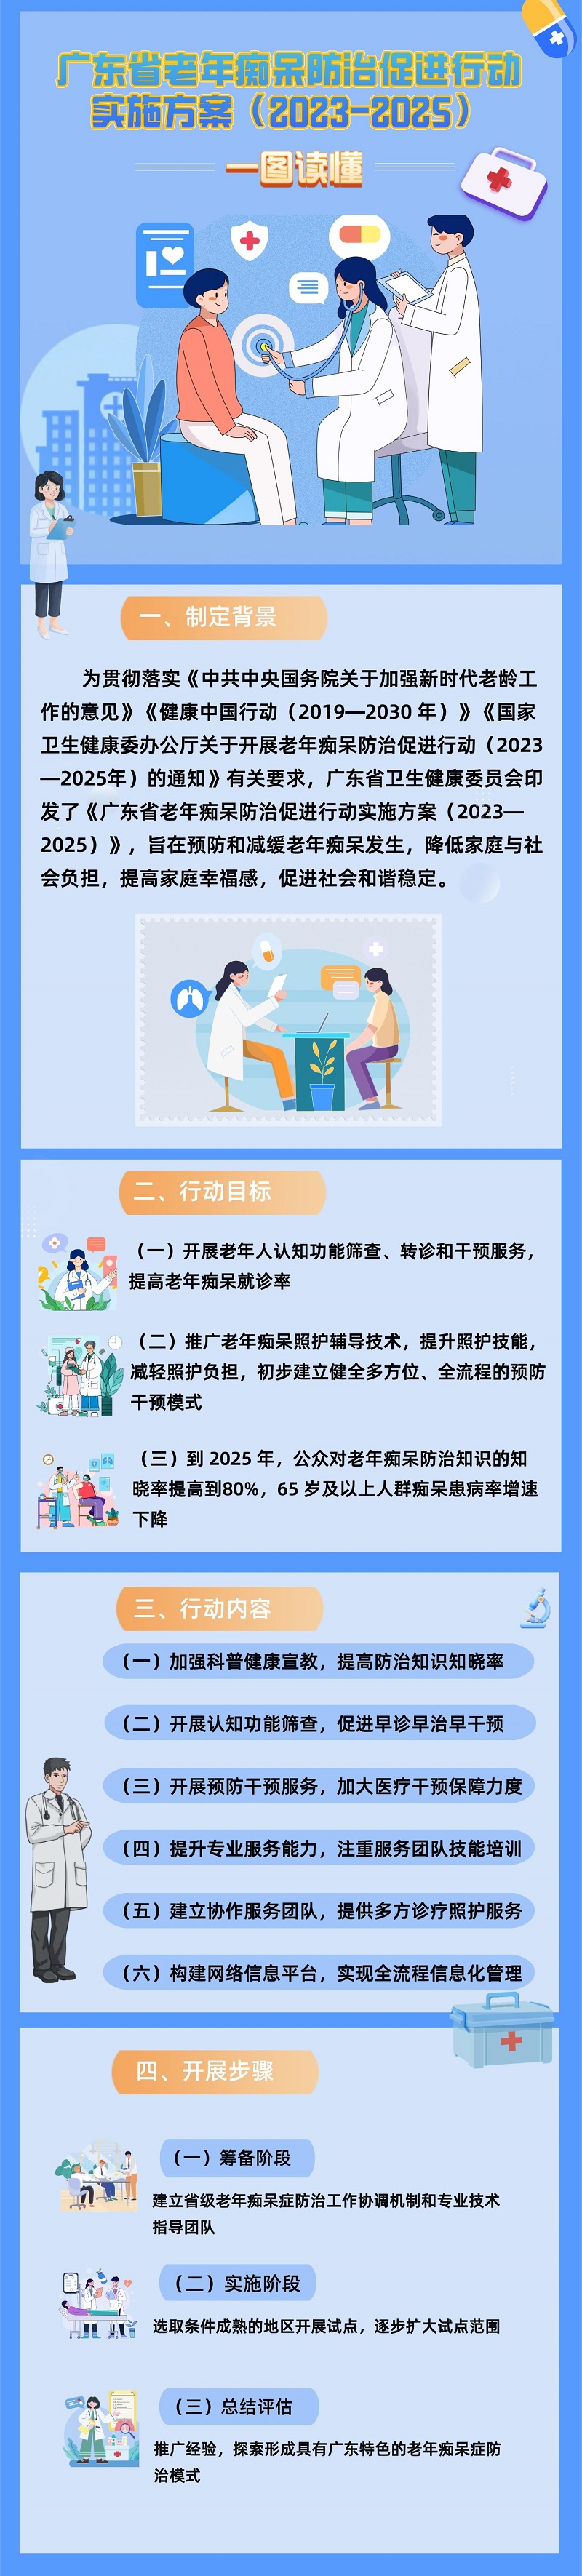 一图读懂《广东省老年痴呆防治行动(2023—2025)》.jpg